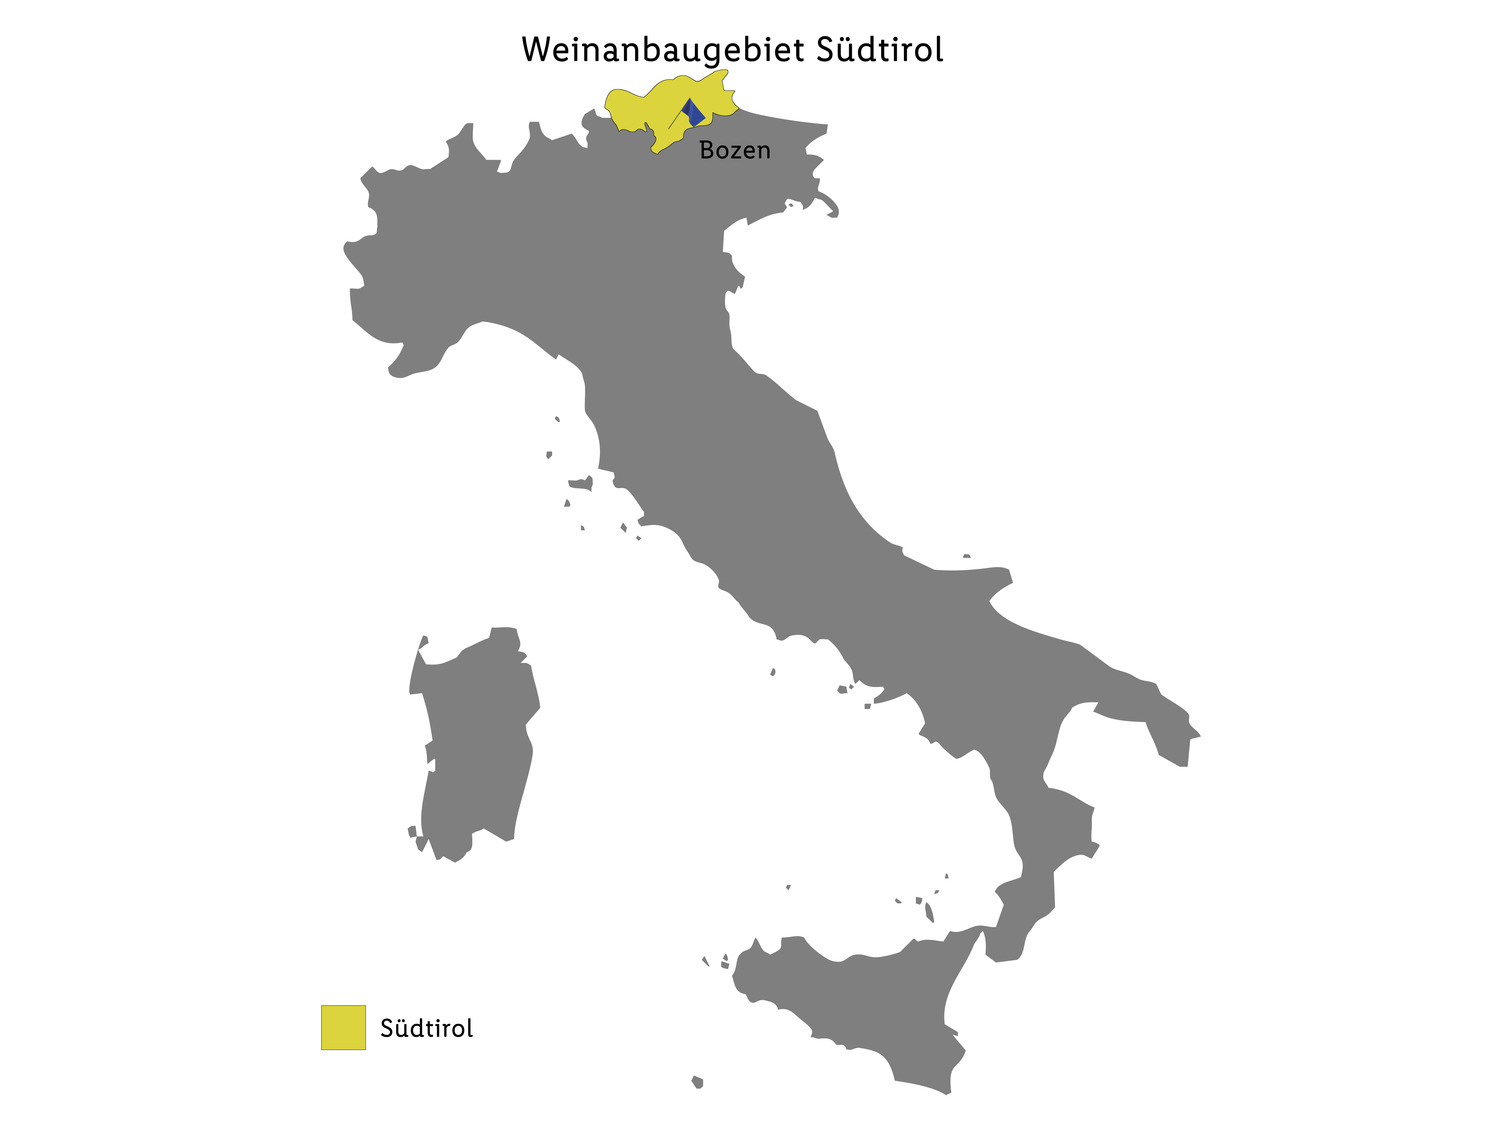 Weißburgunder Weinberg Dolomiten IGT trocken, Weißwein…